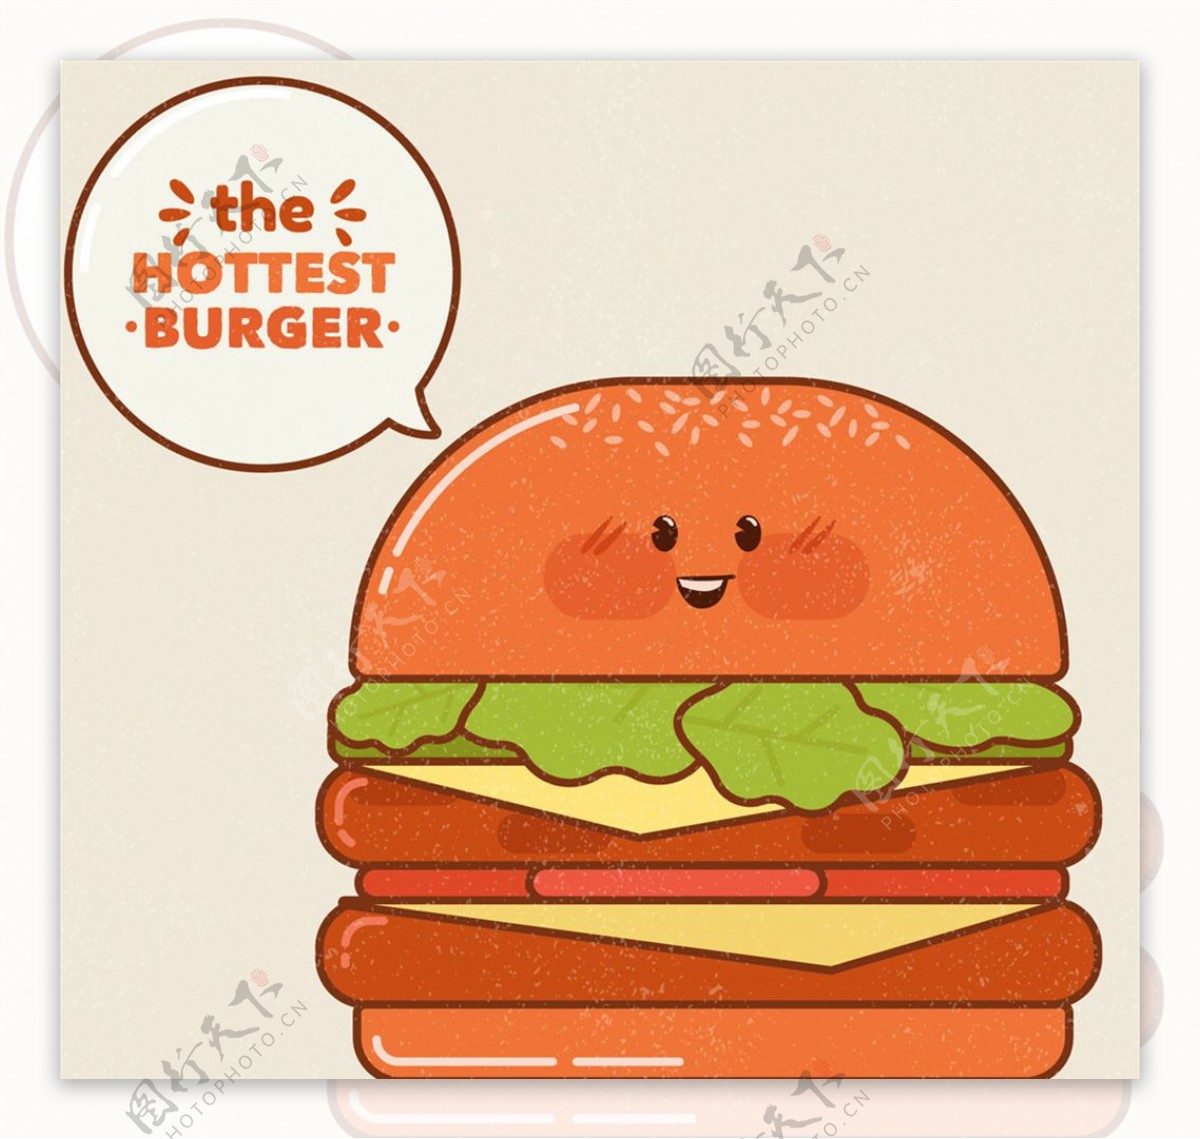 彩绘表情汉堡包矢量素材